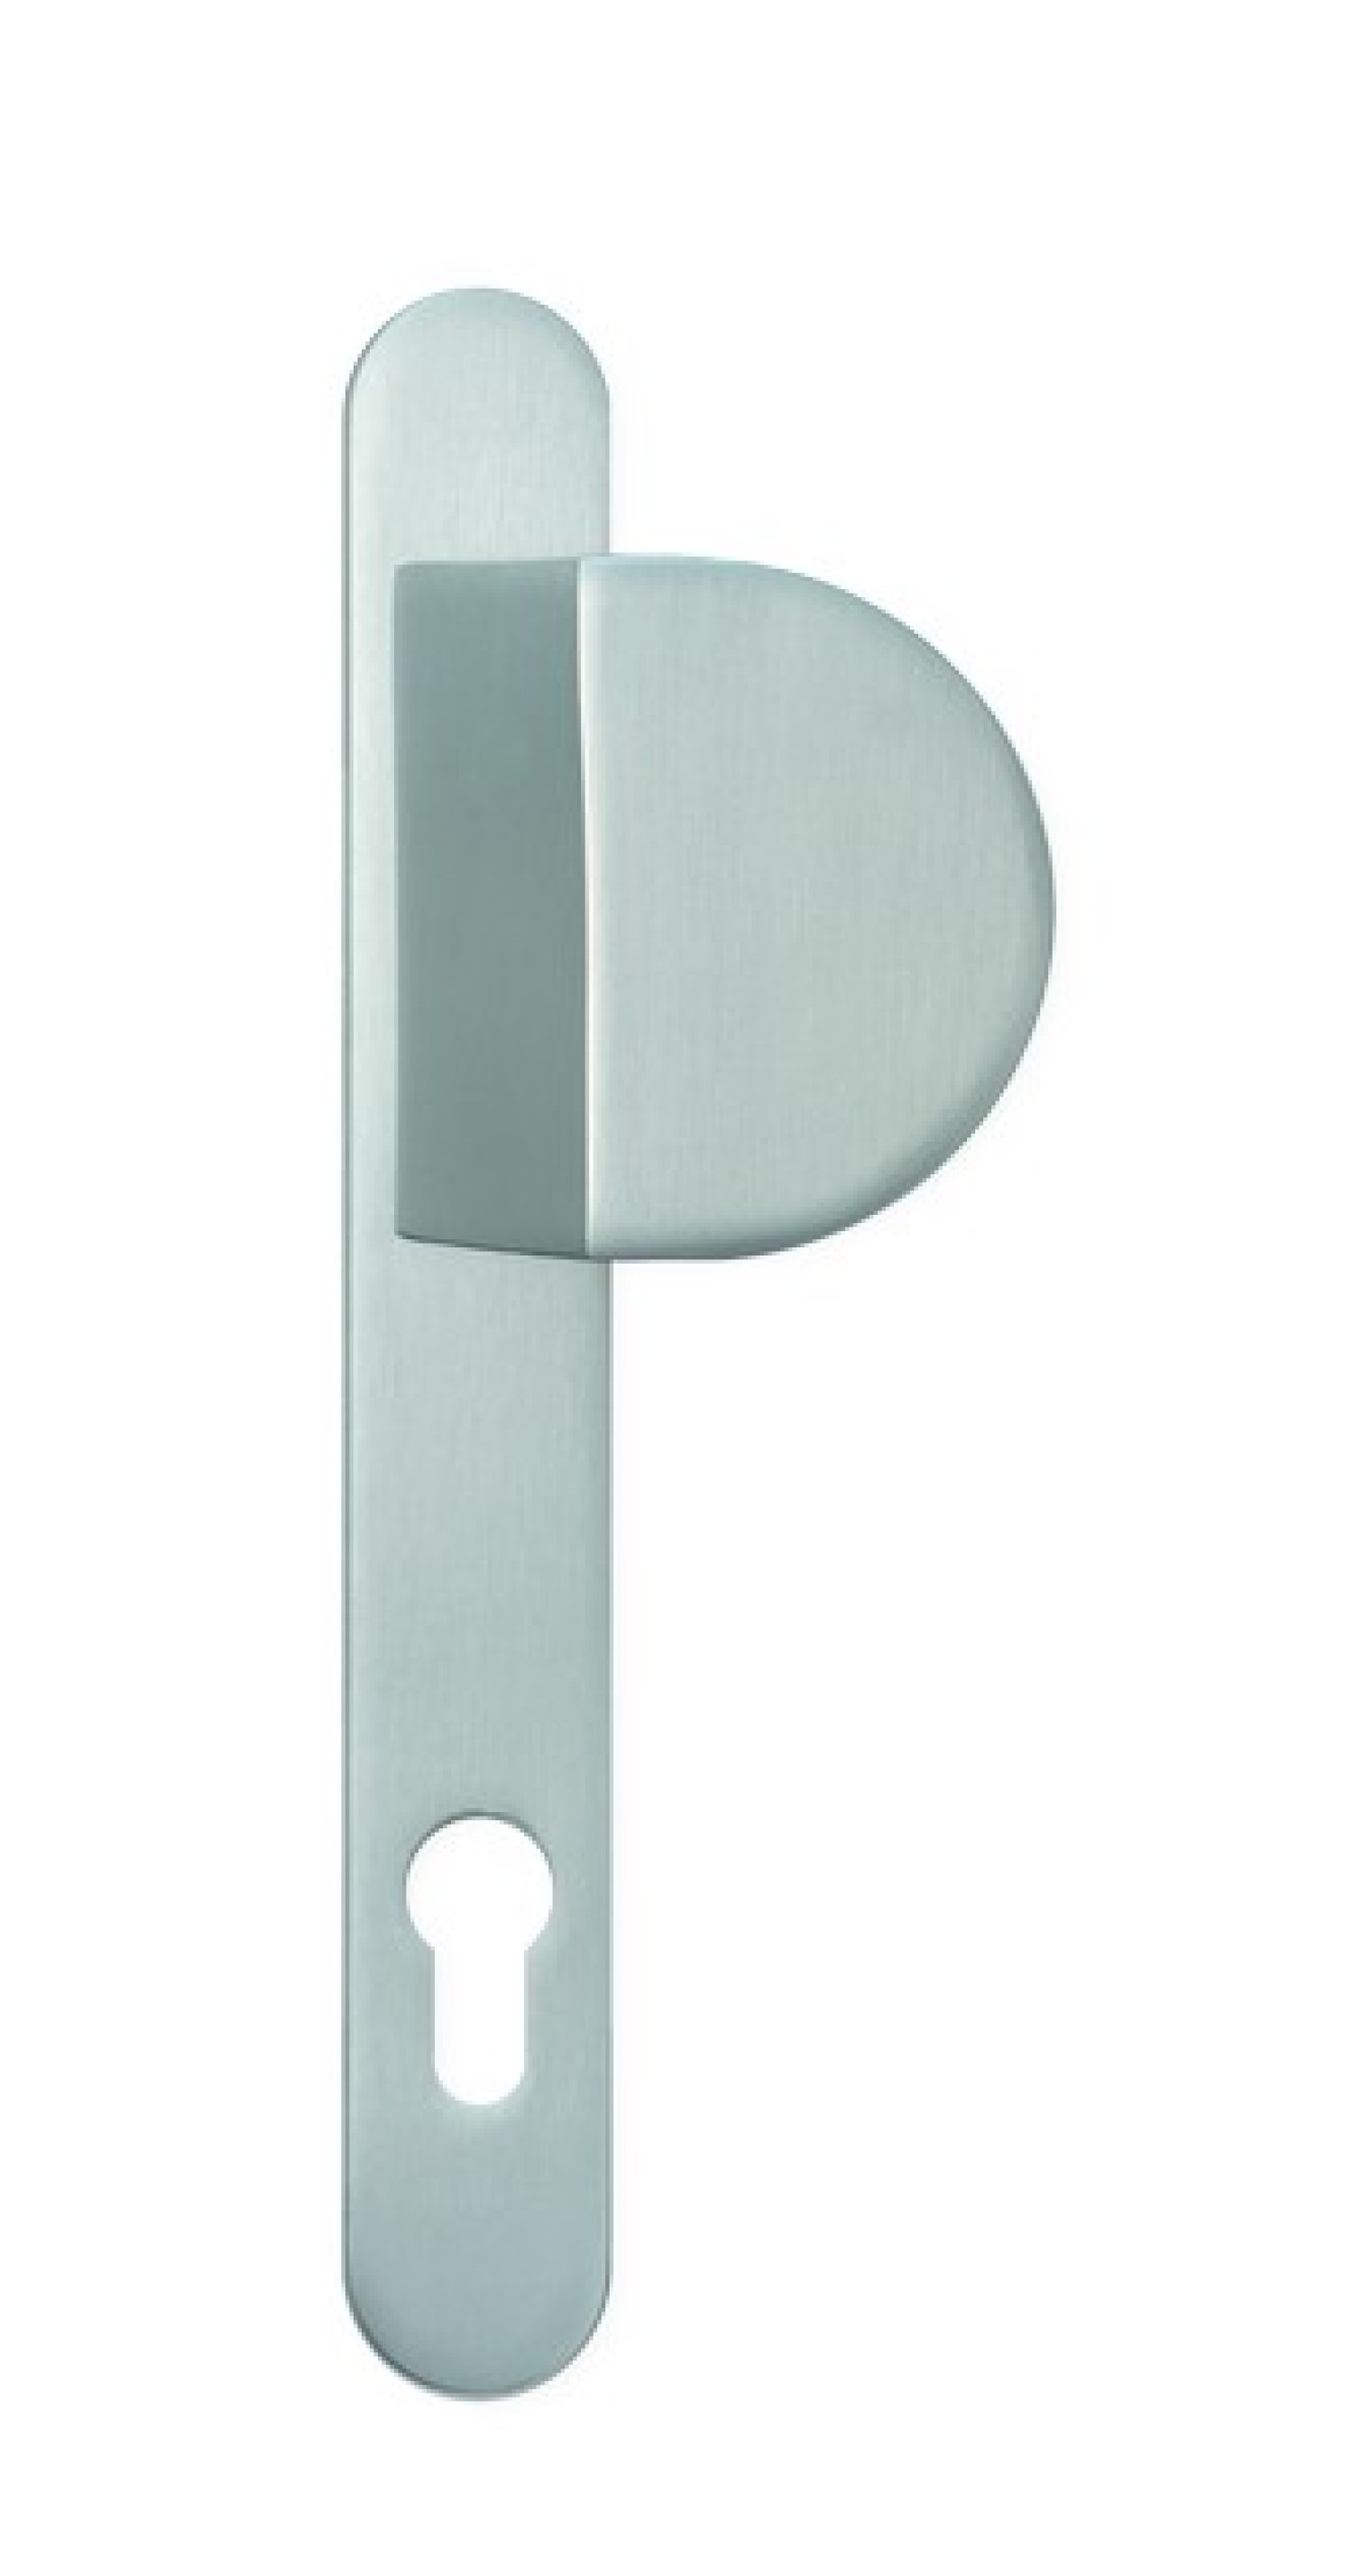 Bild von No. 61 Aluminium Langschild Schutzbeschlag für Haustüren - Interio